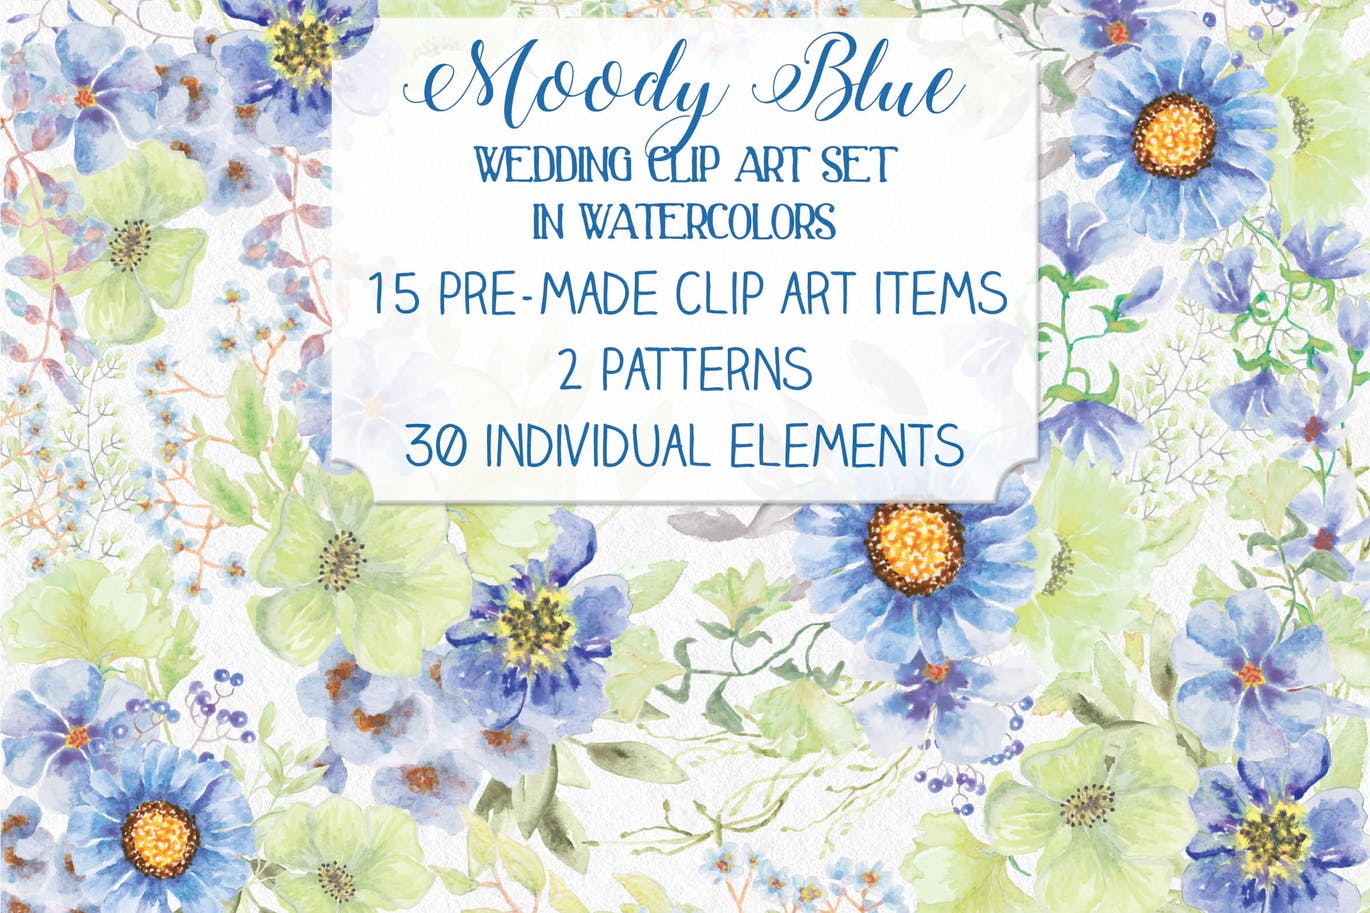 忧郁蓝水彩手绘花卉非凡图库精选设计素材 “Moody Blue” Watercolor Bundle插图